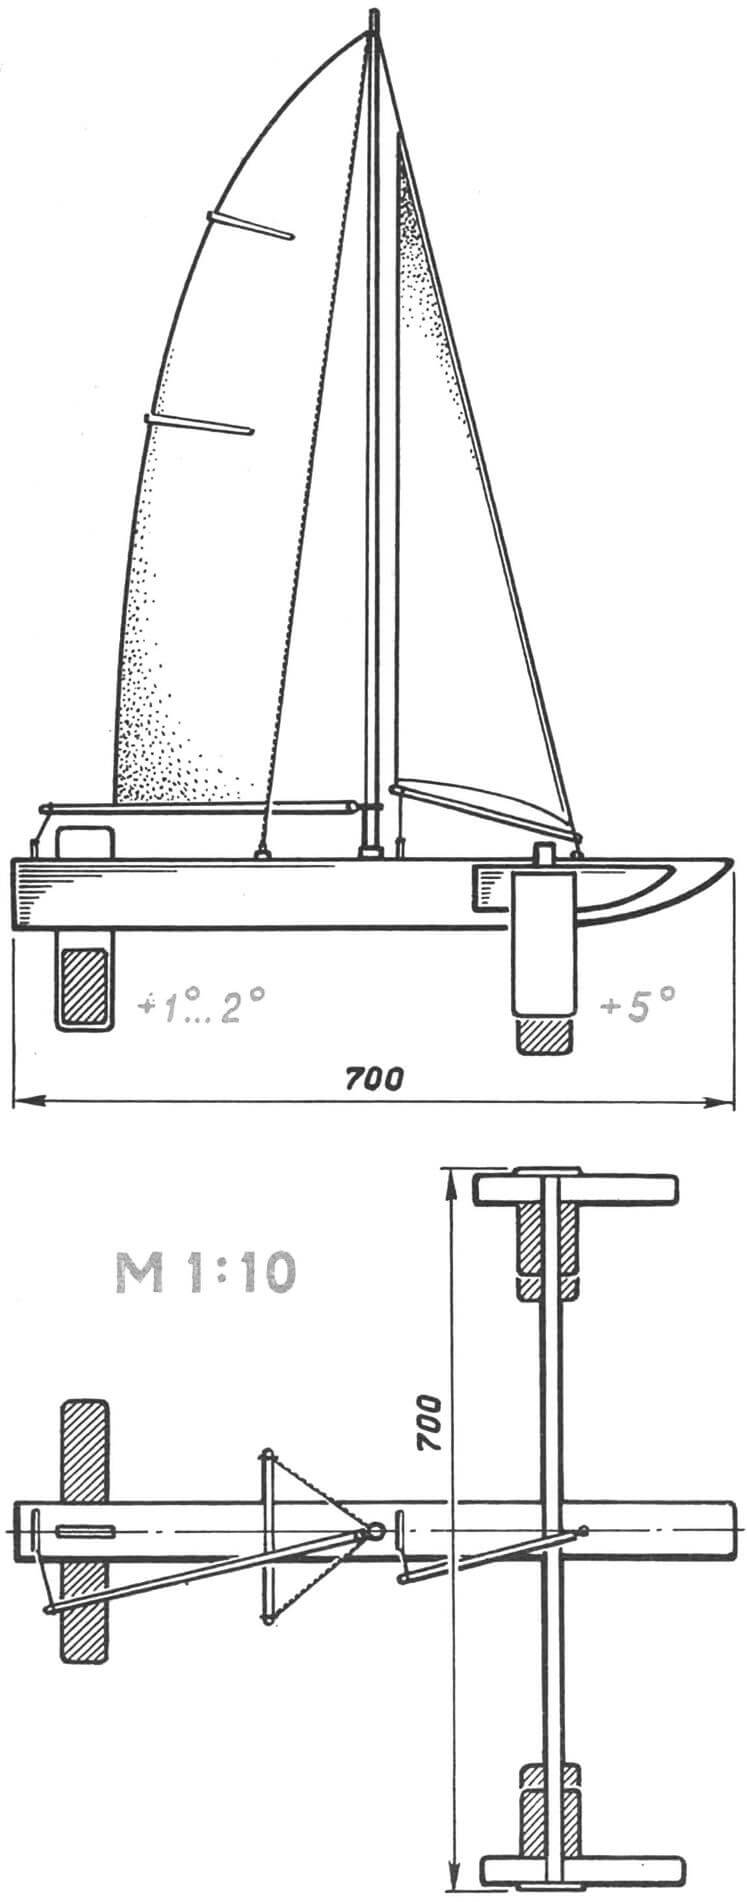 Рис. 3. Модель неуправляемой яхты на подводных крыльях с глиссирующей самолетной схемой.